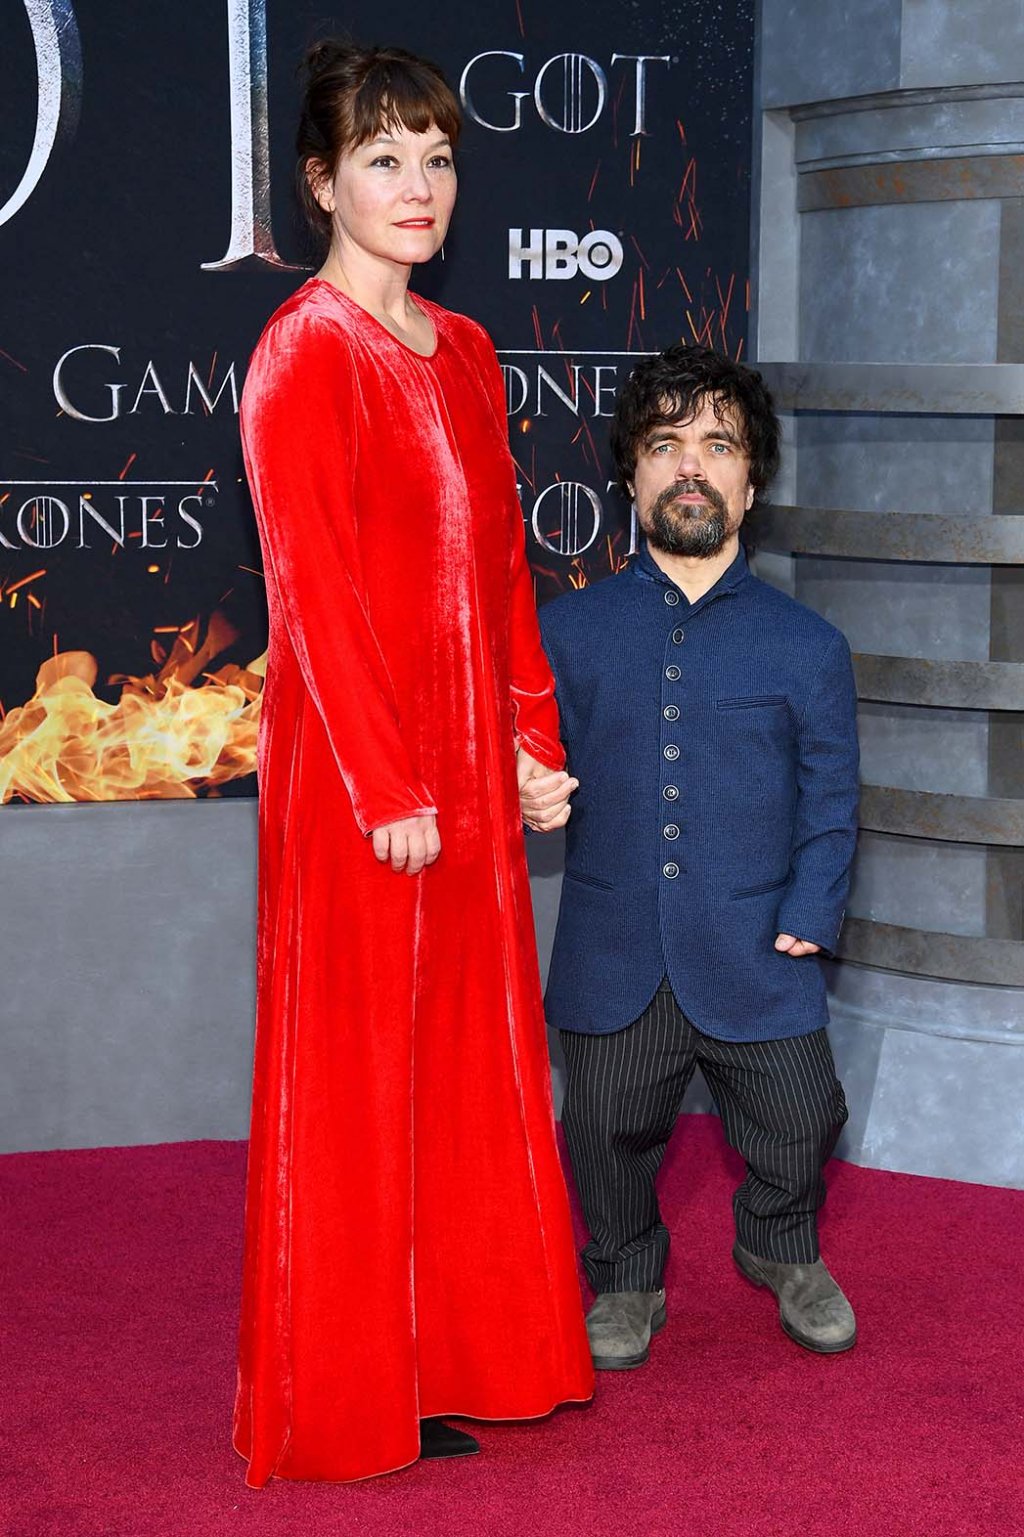 Game of Thrones: Elenco se reúne em première da 8ª temporada!